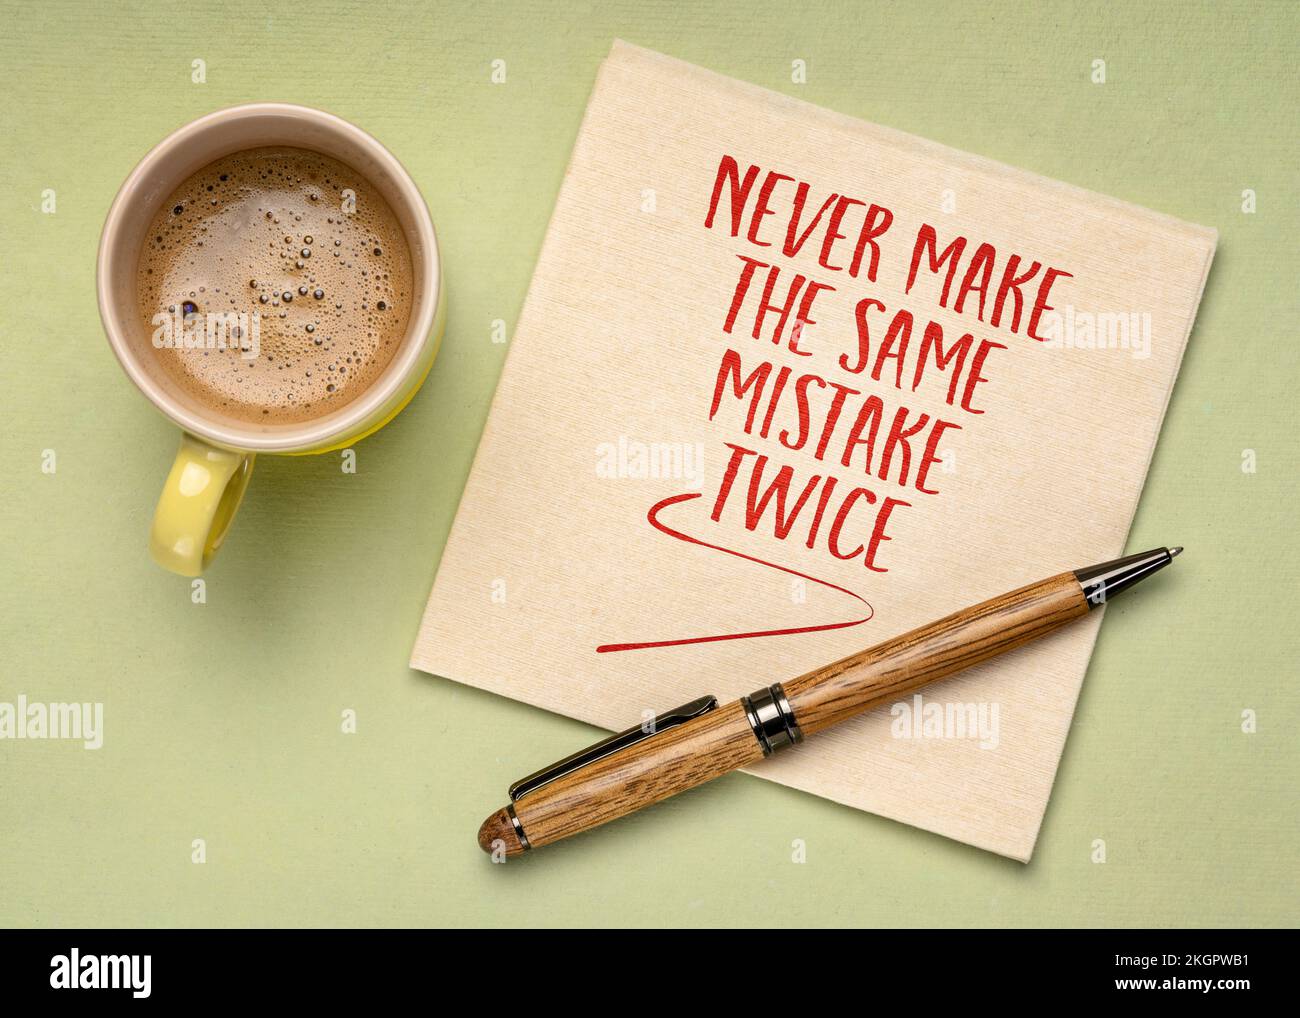 Machen Sie nie wieder denselben Fehler – inspirierende Handschrift auf einer Serviette mit Kaffee, Erfahrung, Lernen und persönlichem Entwicklungskonzept Stockfoto